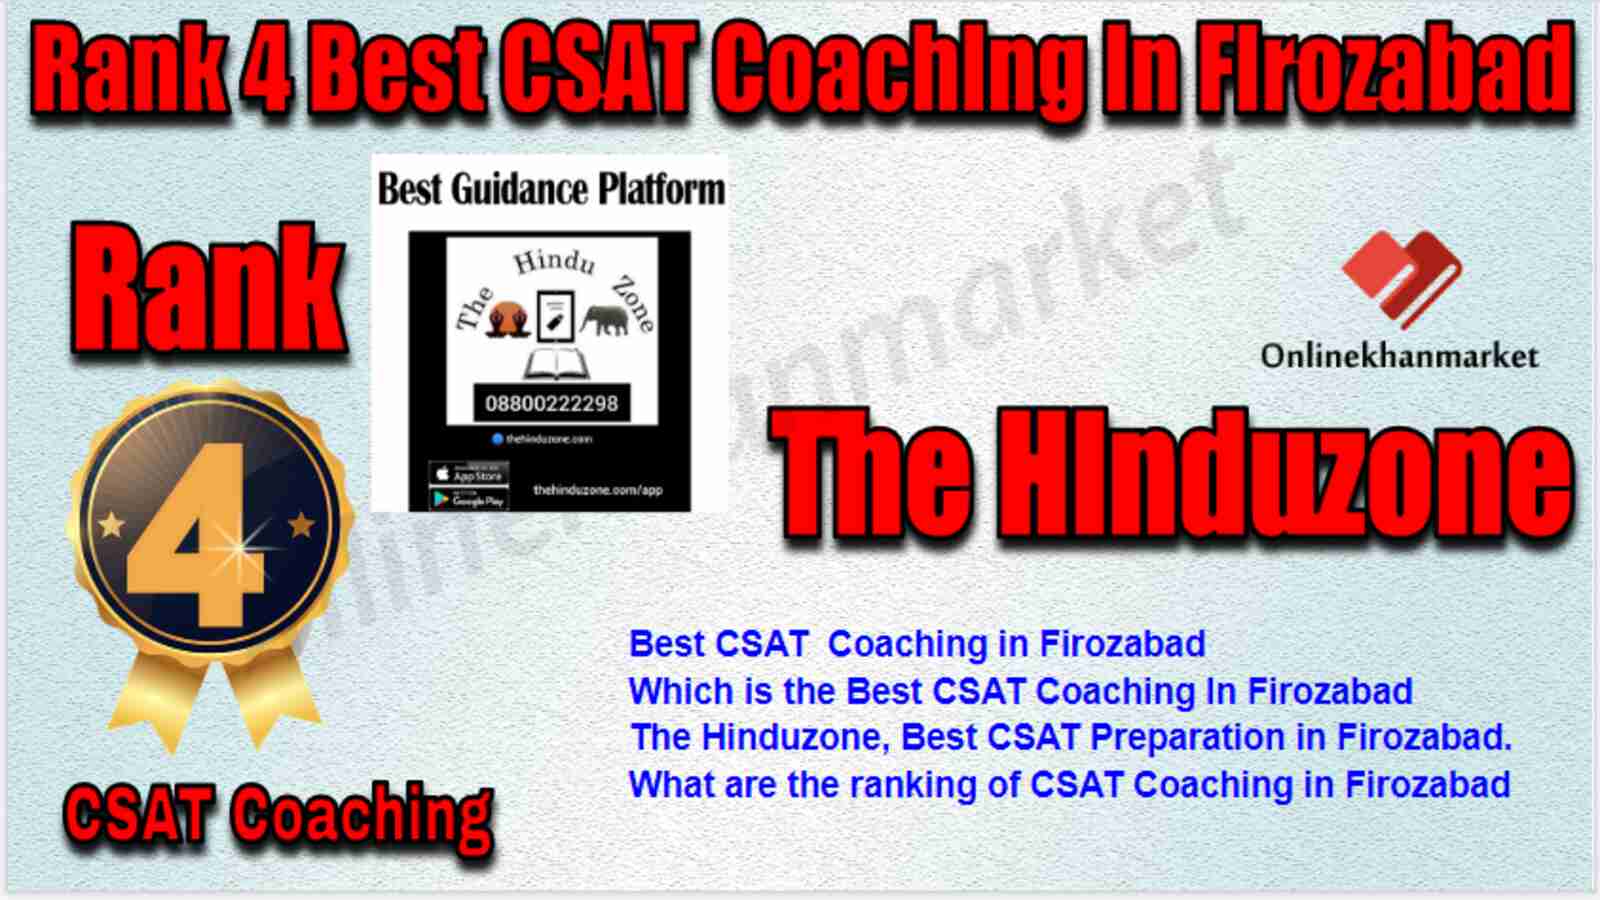 Rank 4 Best CSAT Coaching in Firozabad